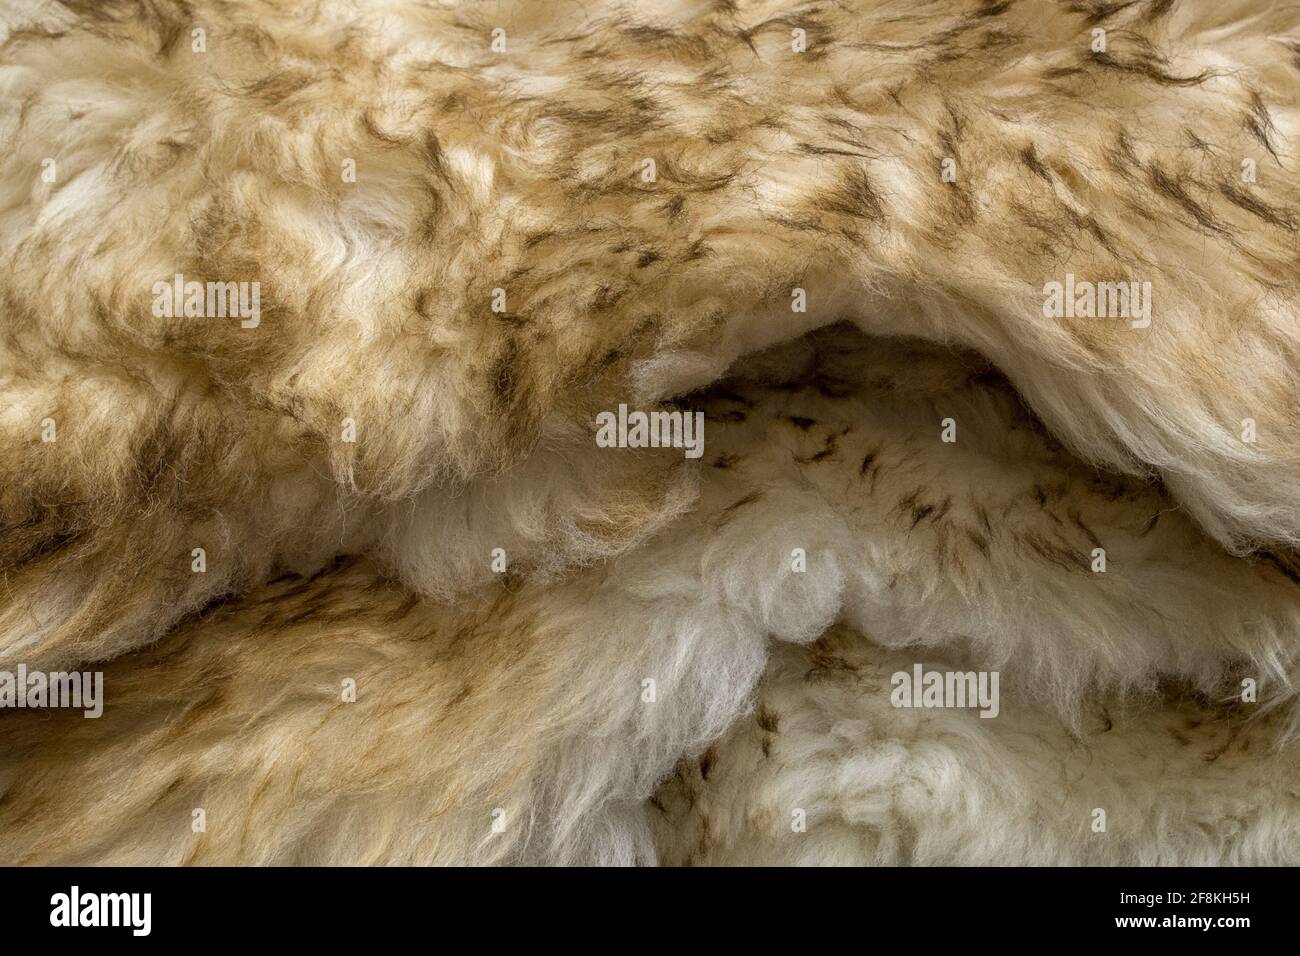 Eine Armvoll übereinander gestapelter Teppiche aus künstlicher weißer Wolle mit beigen Spitzen hier und da, die Schaf- oder Ziegenhäute mit welligen Fellen imitieren Stockfoto